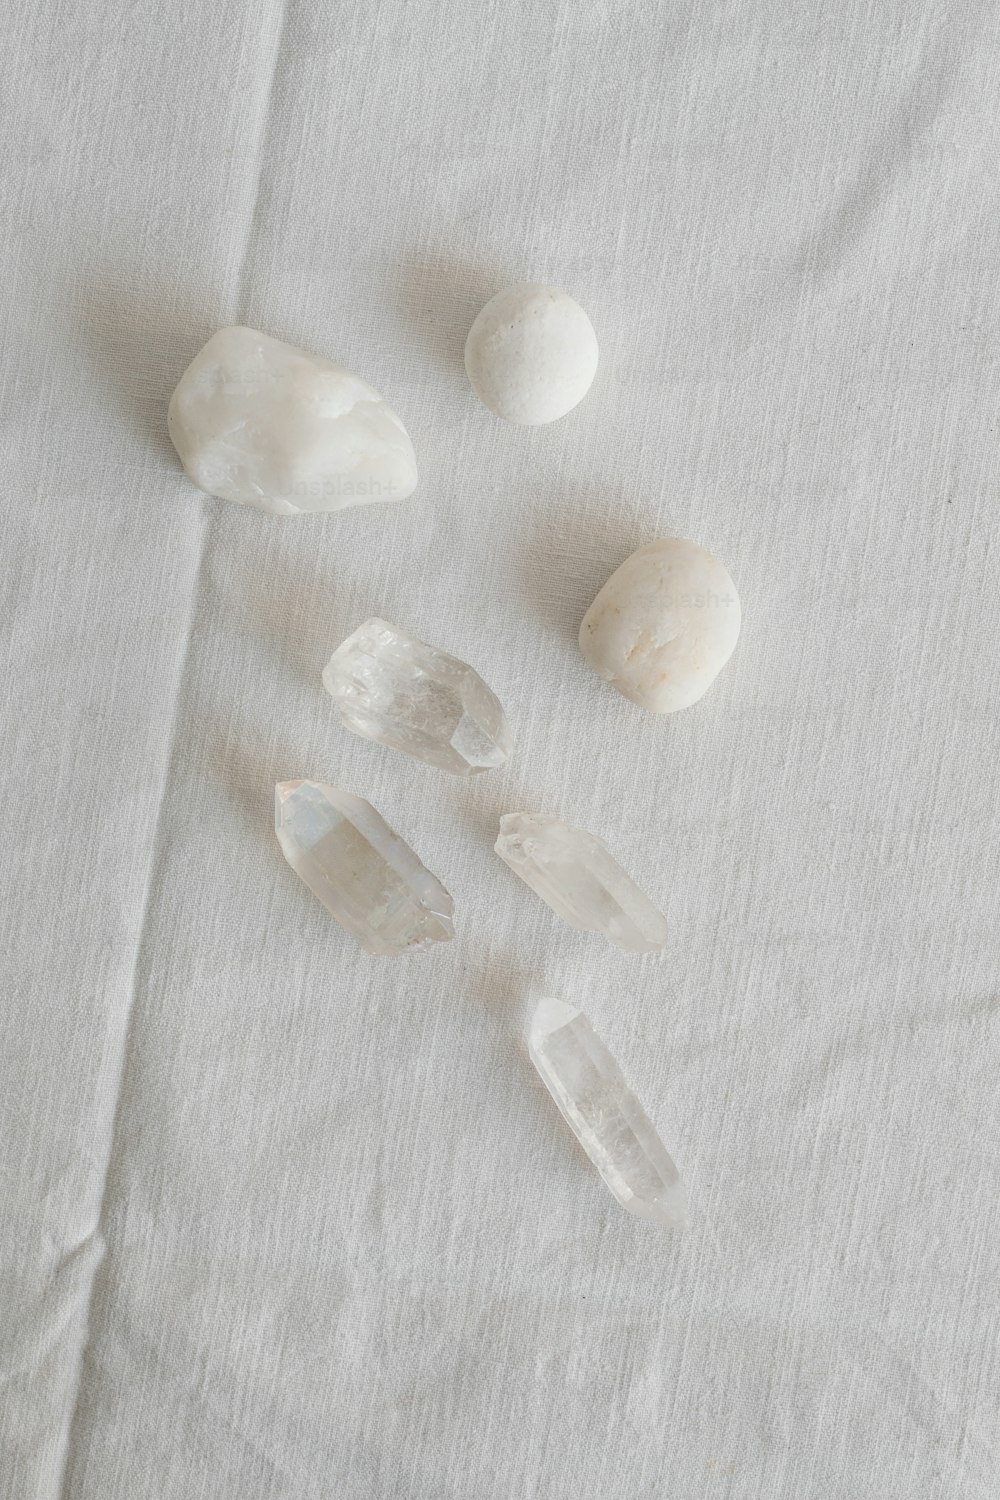 eine Gruppe von Steinen, die auf einem weißen Tuch sitzen